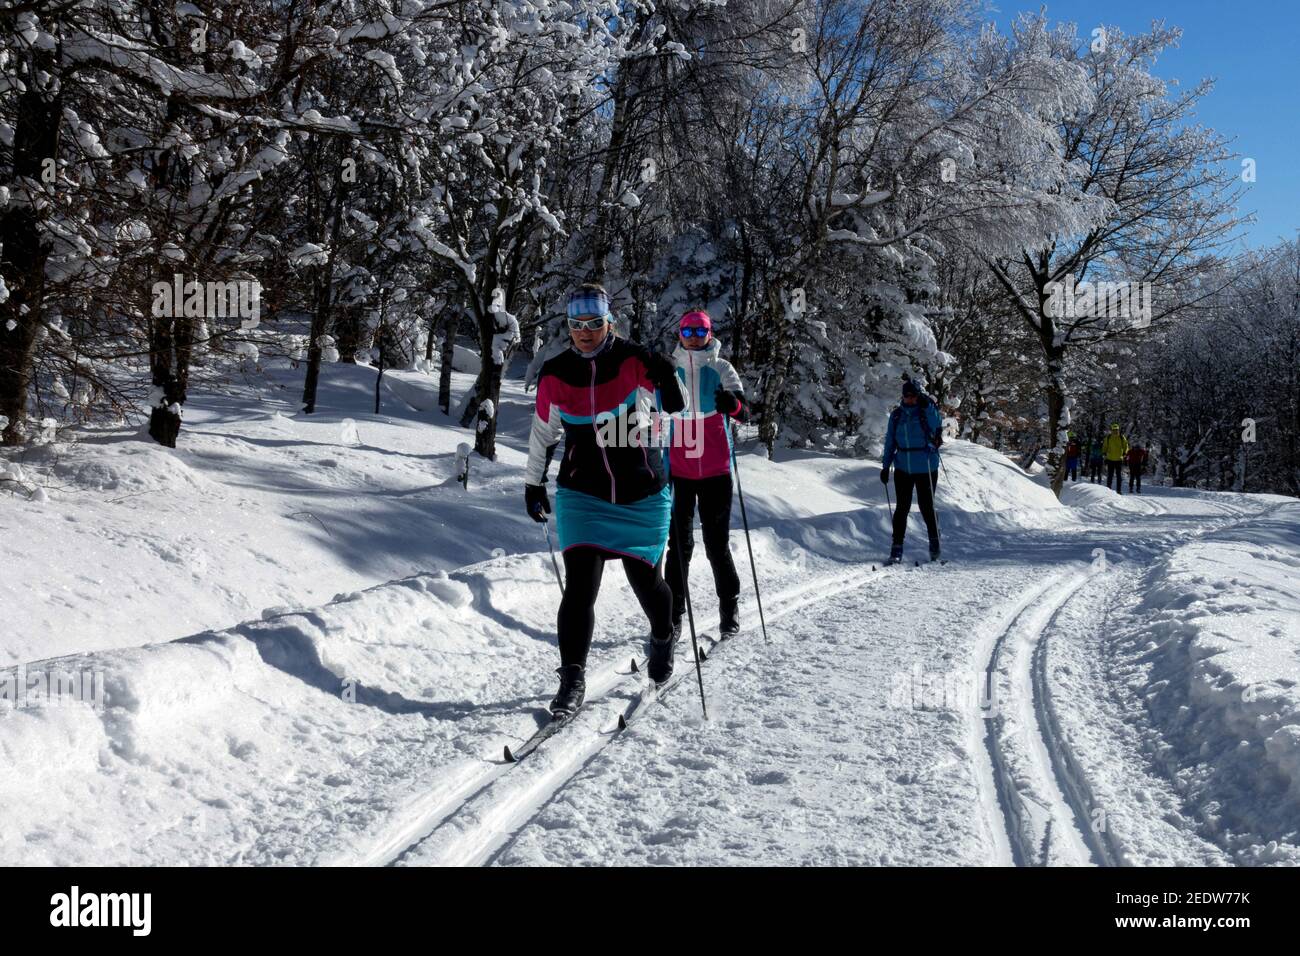 Trail dans la forêt enneigée femmes skieurs en plein air fitness scène d'hiver Banque D'Images